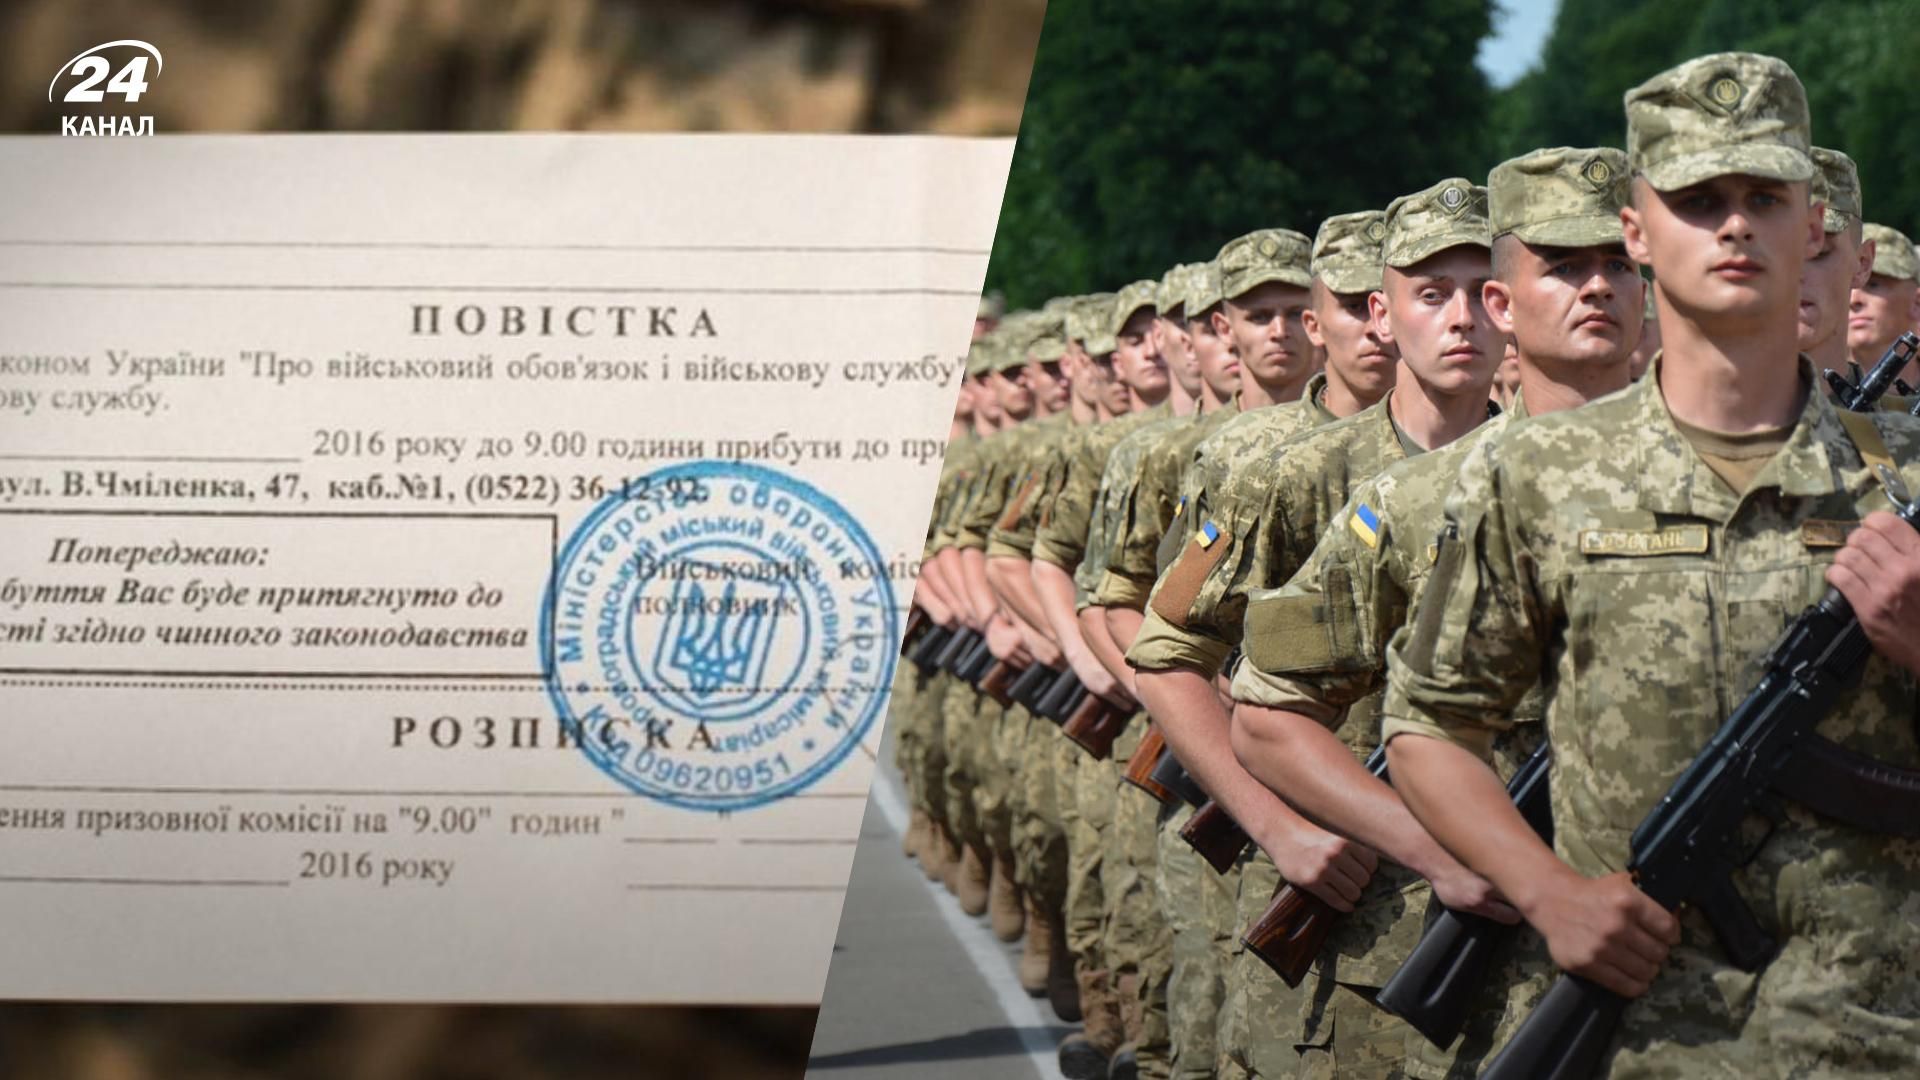 Мобілізація в Україні 2022 - які дані повинна містити повістка, заповнена військкоматом